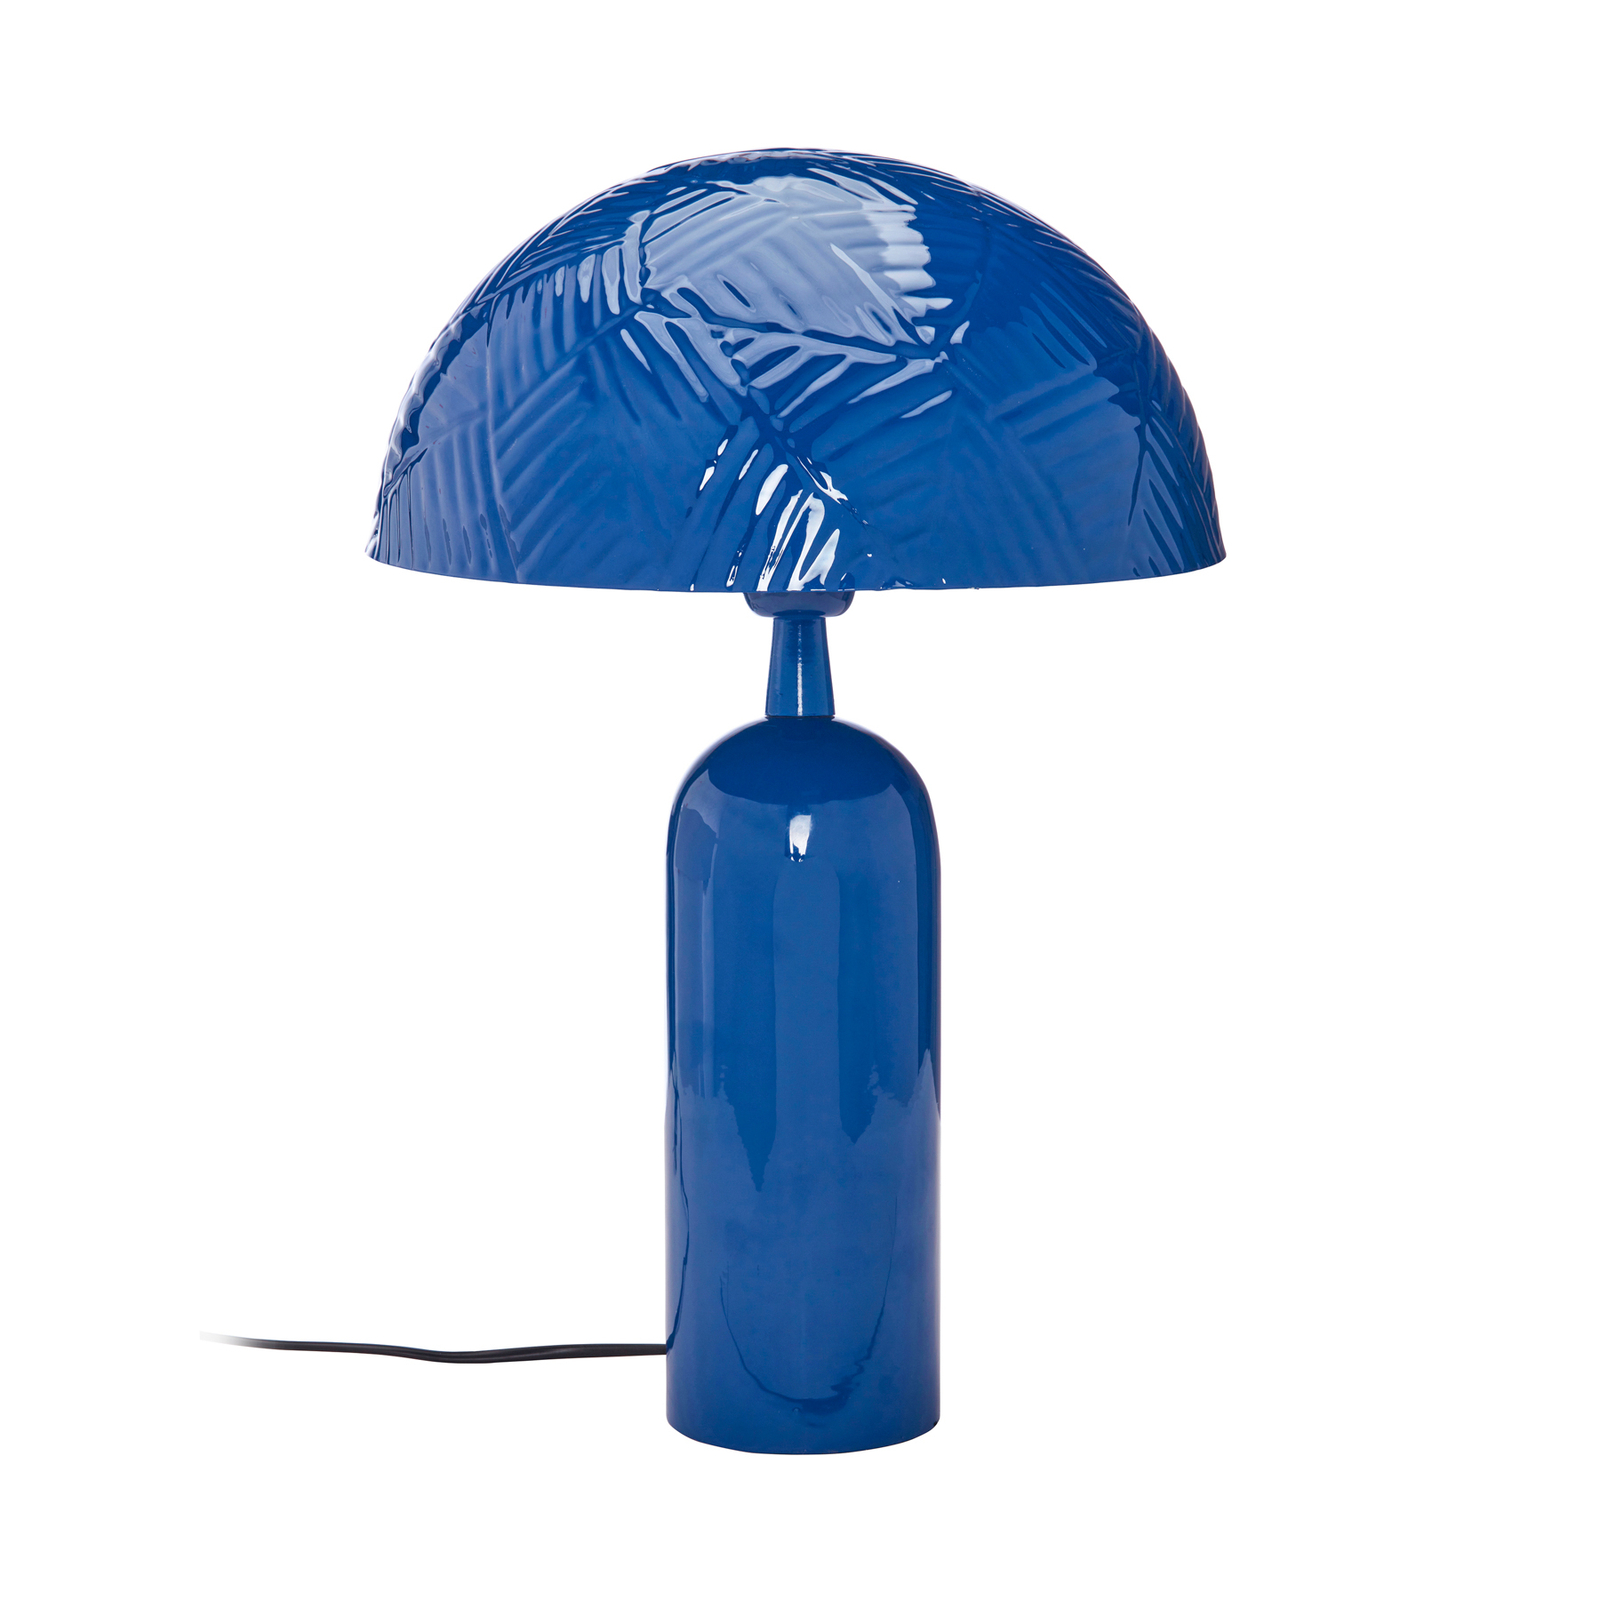 PR Home Carter stolní lampa z kovu, modrá